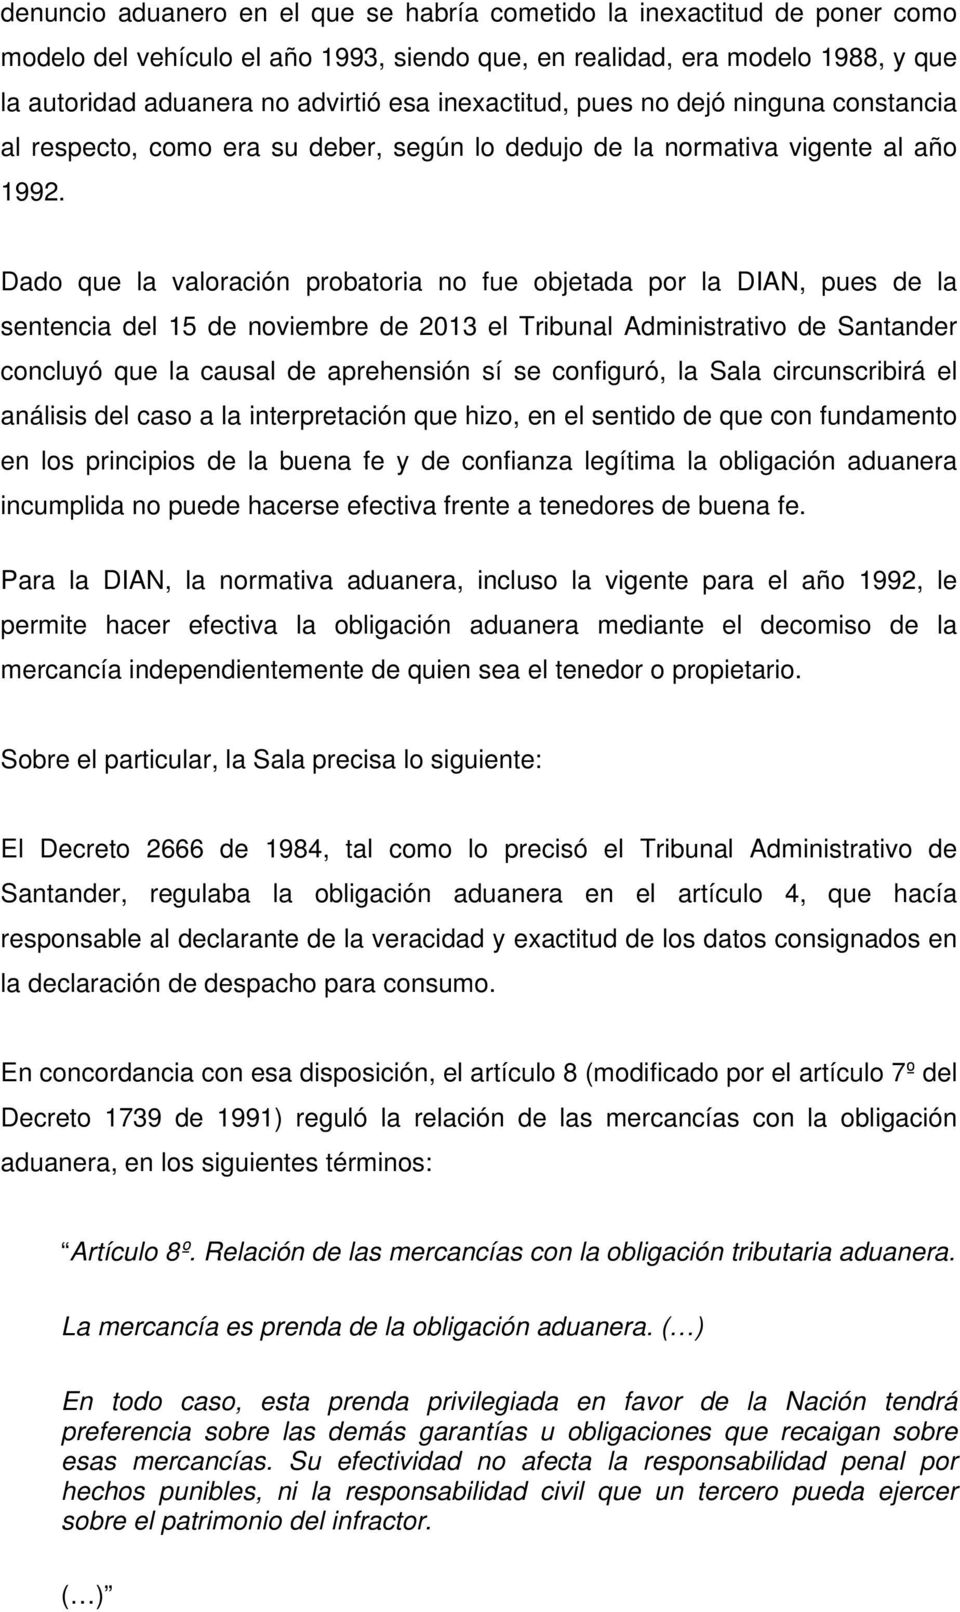 Dado que la valoración probatoria no fue objetada por la DIAN, pues de la sentencia del 15 de noviembre de 2013 el Tribunal Administrativo de Santander concluyó que la causal de aprehensión sí se